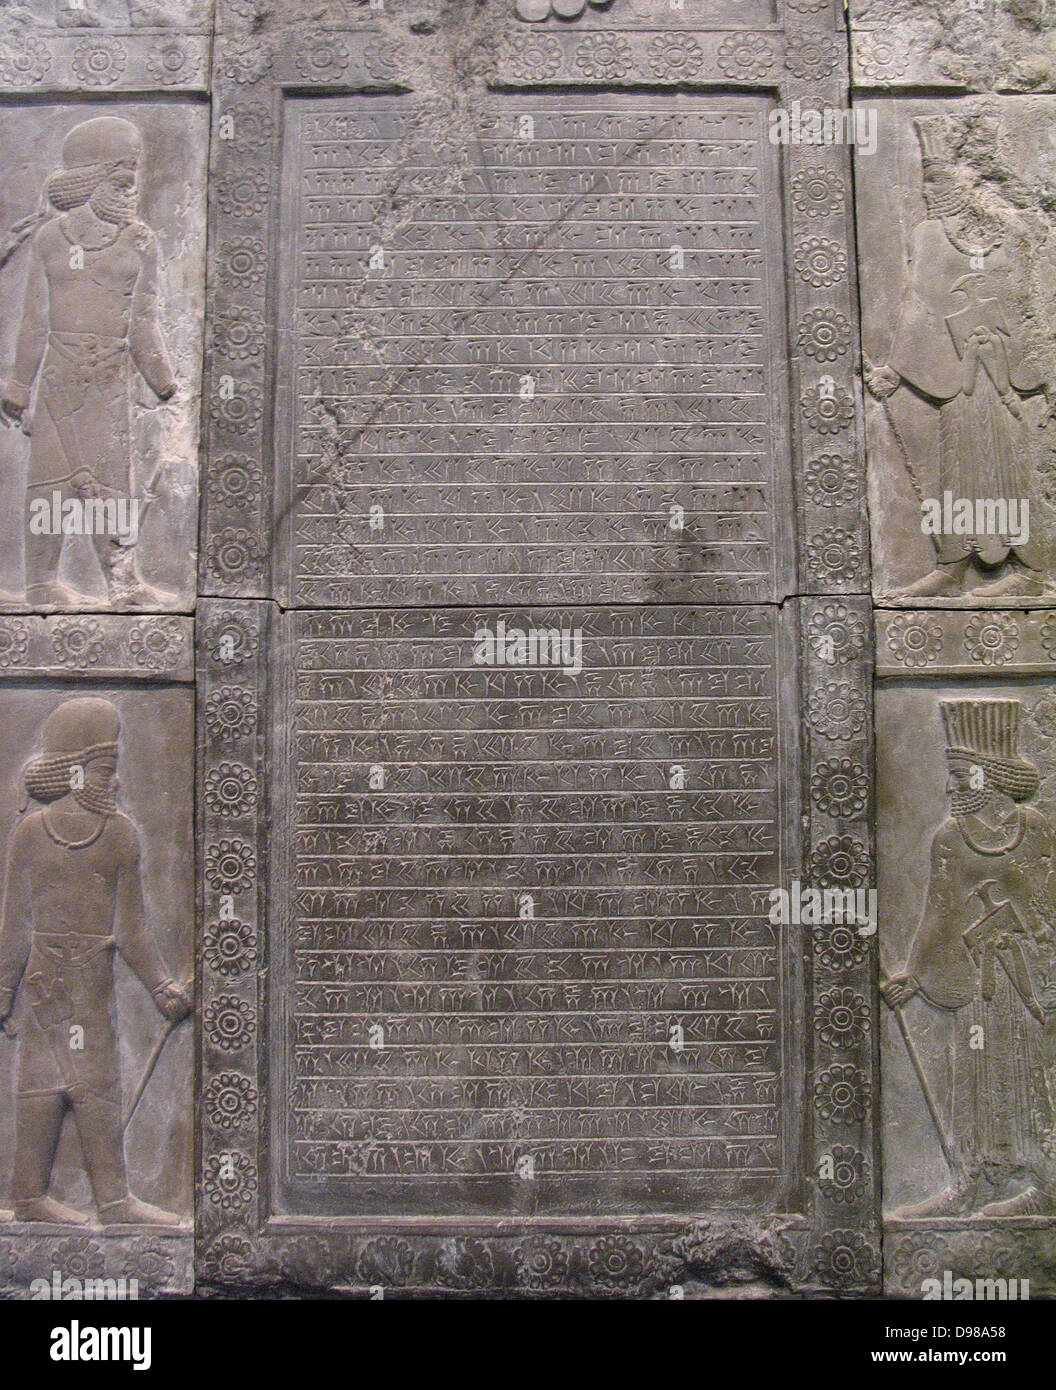 Esta inscripción está escrita en una antigua escritura llamada cuneiforme. Registra que el rey Artajerjes III (gobernó 359-338BC) reconstruyó la escalera en la que esta inscripción fue tallado. La escalera era una alteración posterior del Palacio de Darío. Foto de stock